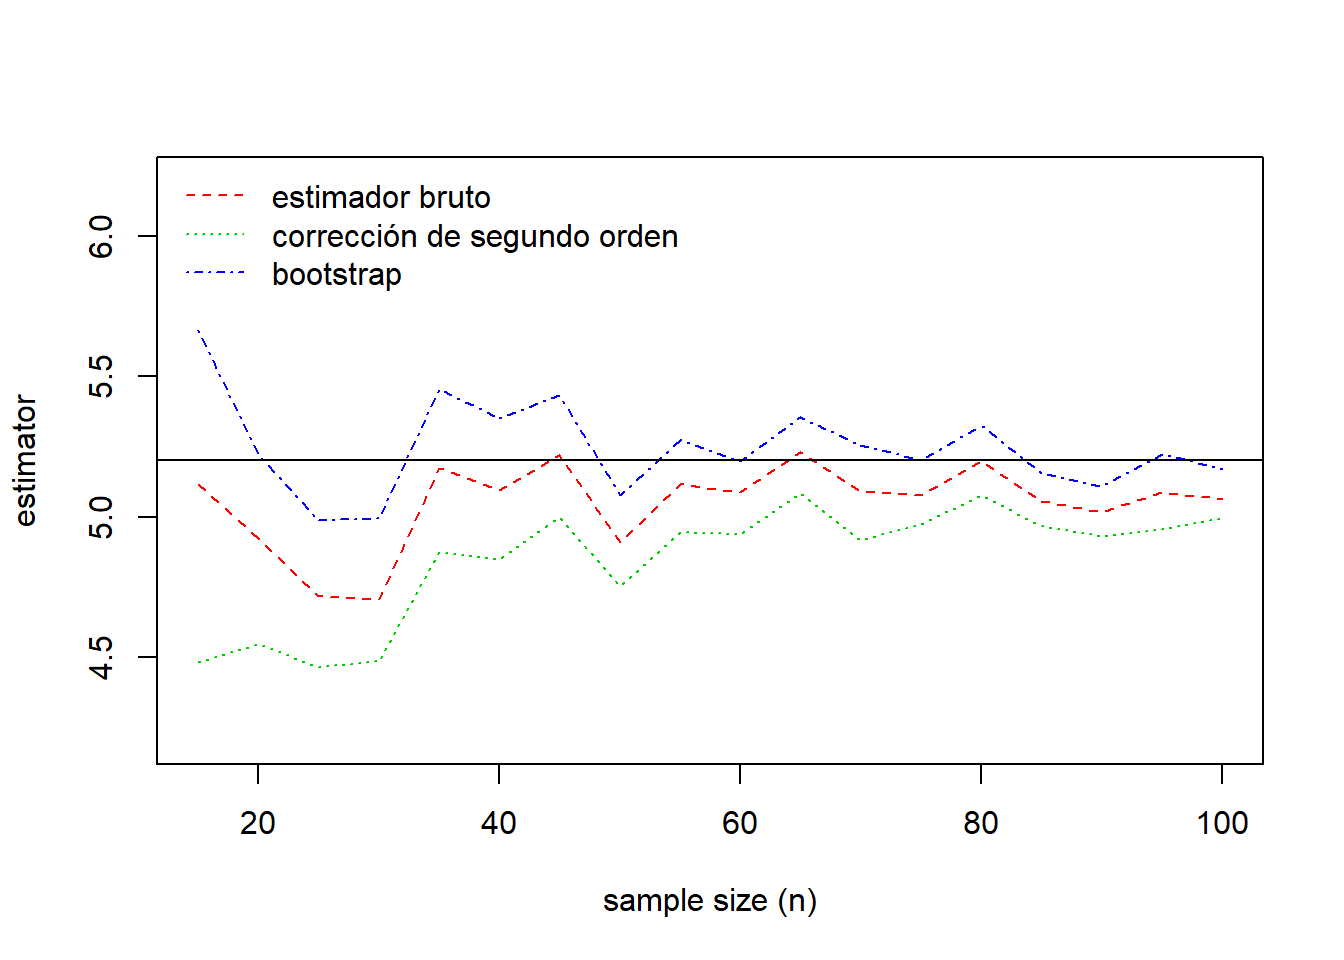 Comparación de estimaciones. El verdadero valor del parámetro viene dado por la línea continua horizontal en 5.20.